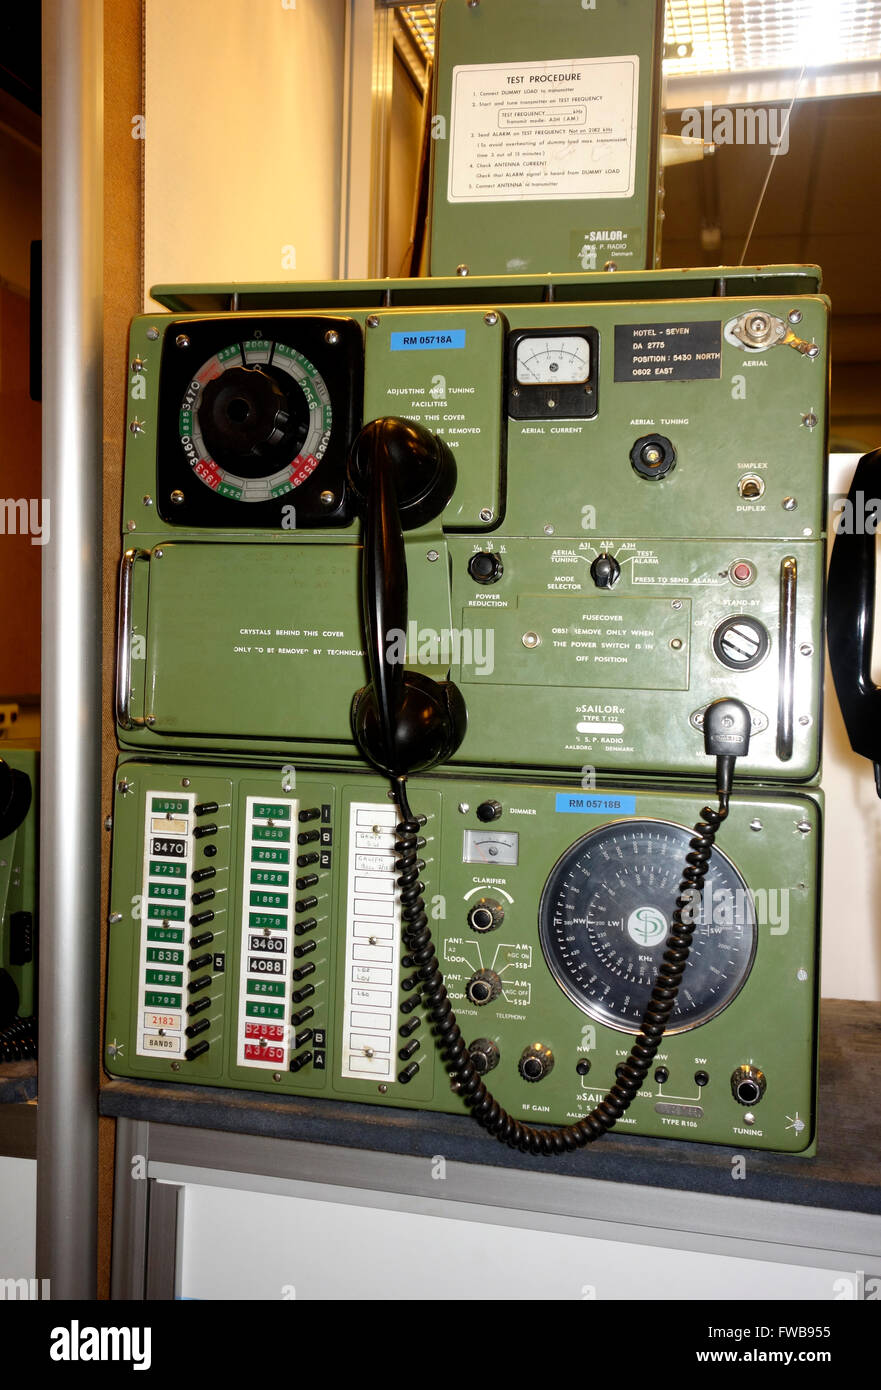 fruhen-1970es-marine-radios-sailor-r106-und-radio-sailor-t122-an-der-oberseite-marine-radio-vtg-sp-radio-aalborg-danemark-fwb955.jpg